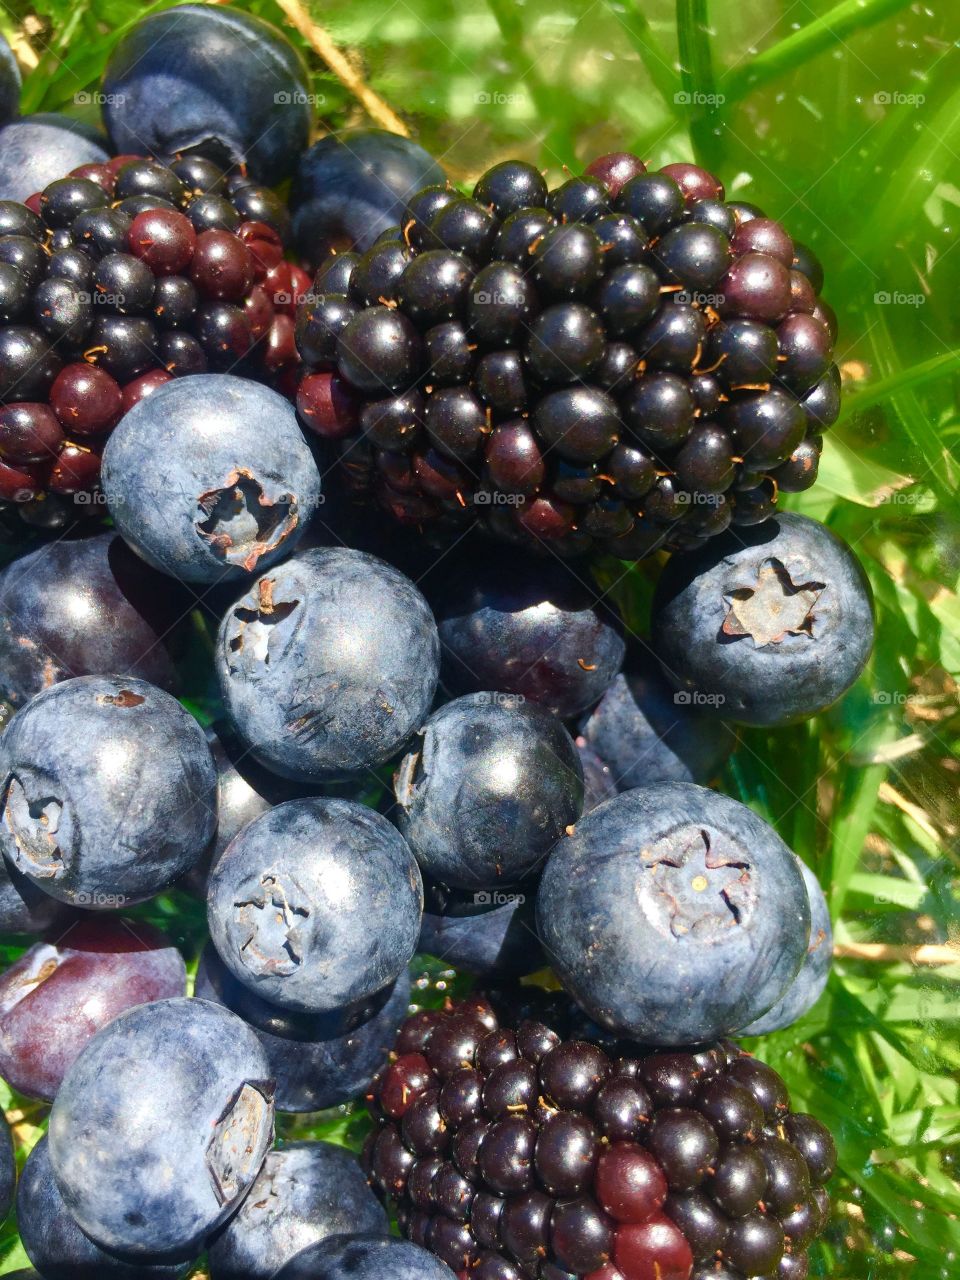 Blackberries and blueberries 